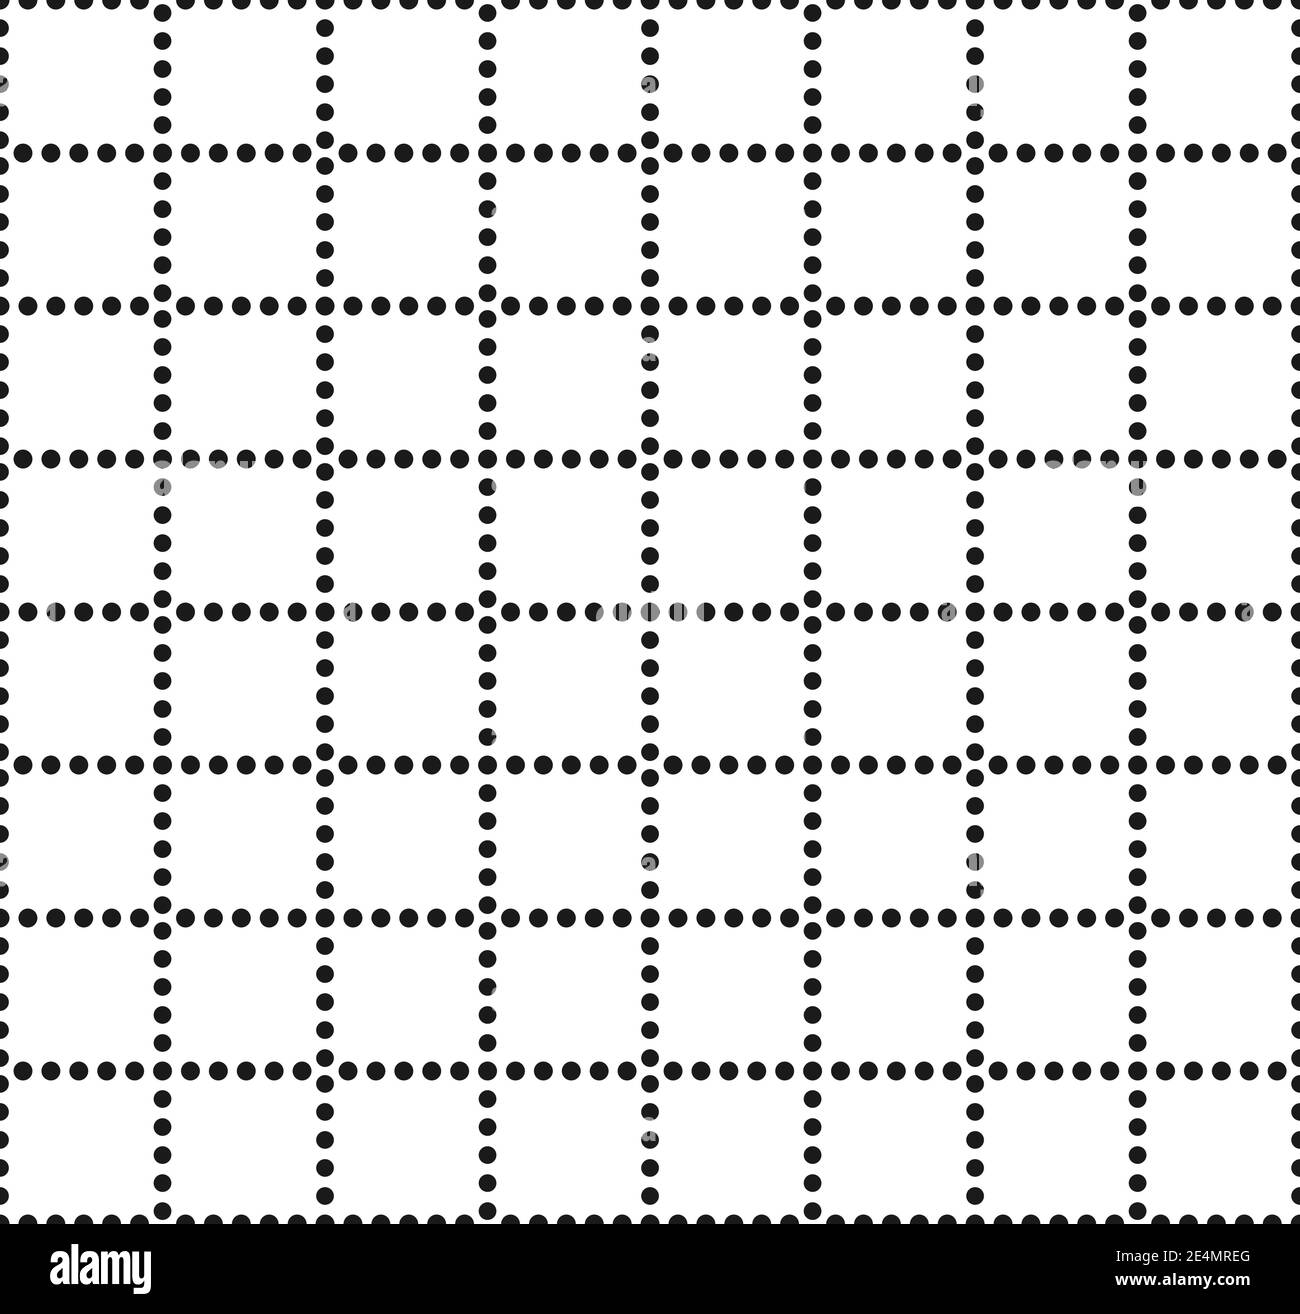 Quadratisches Grundraster. Nahtloses Muster Hintergrund. Modernes Design in schwarzer Punktform. Der weiße Hintergrund lässt sich leicht ändern Stock Vektor